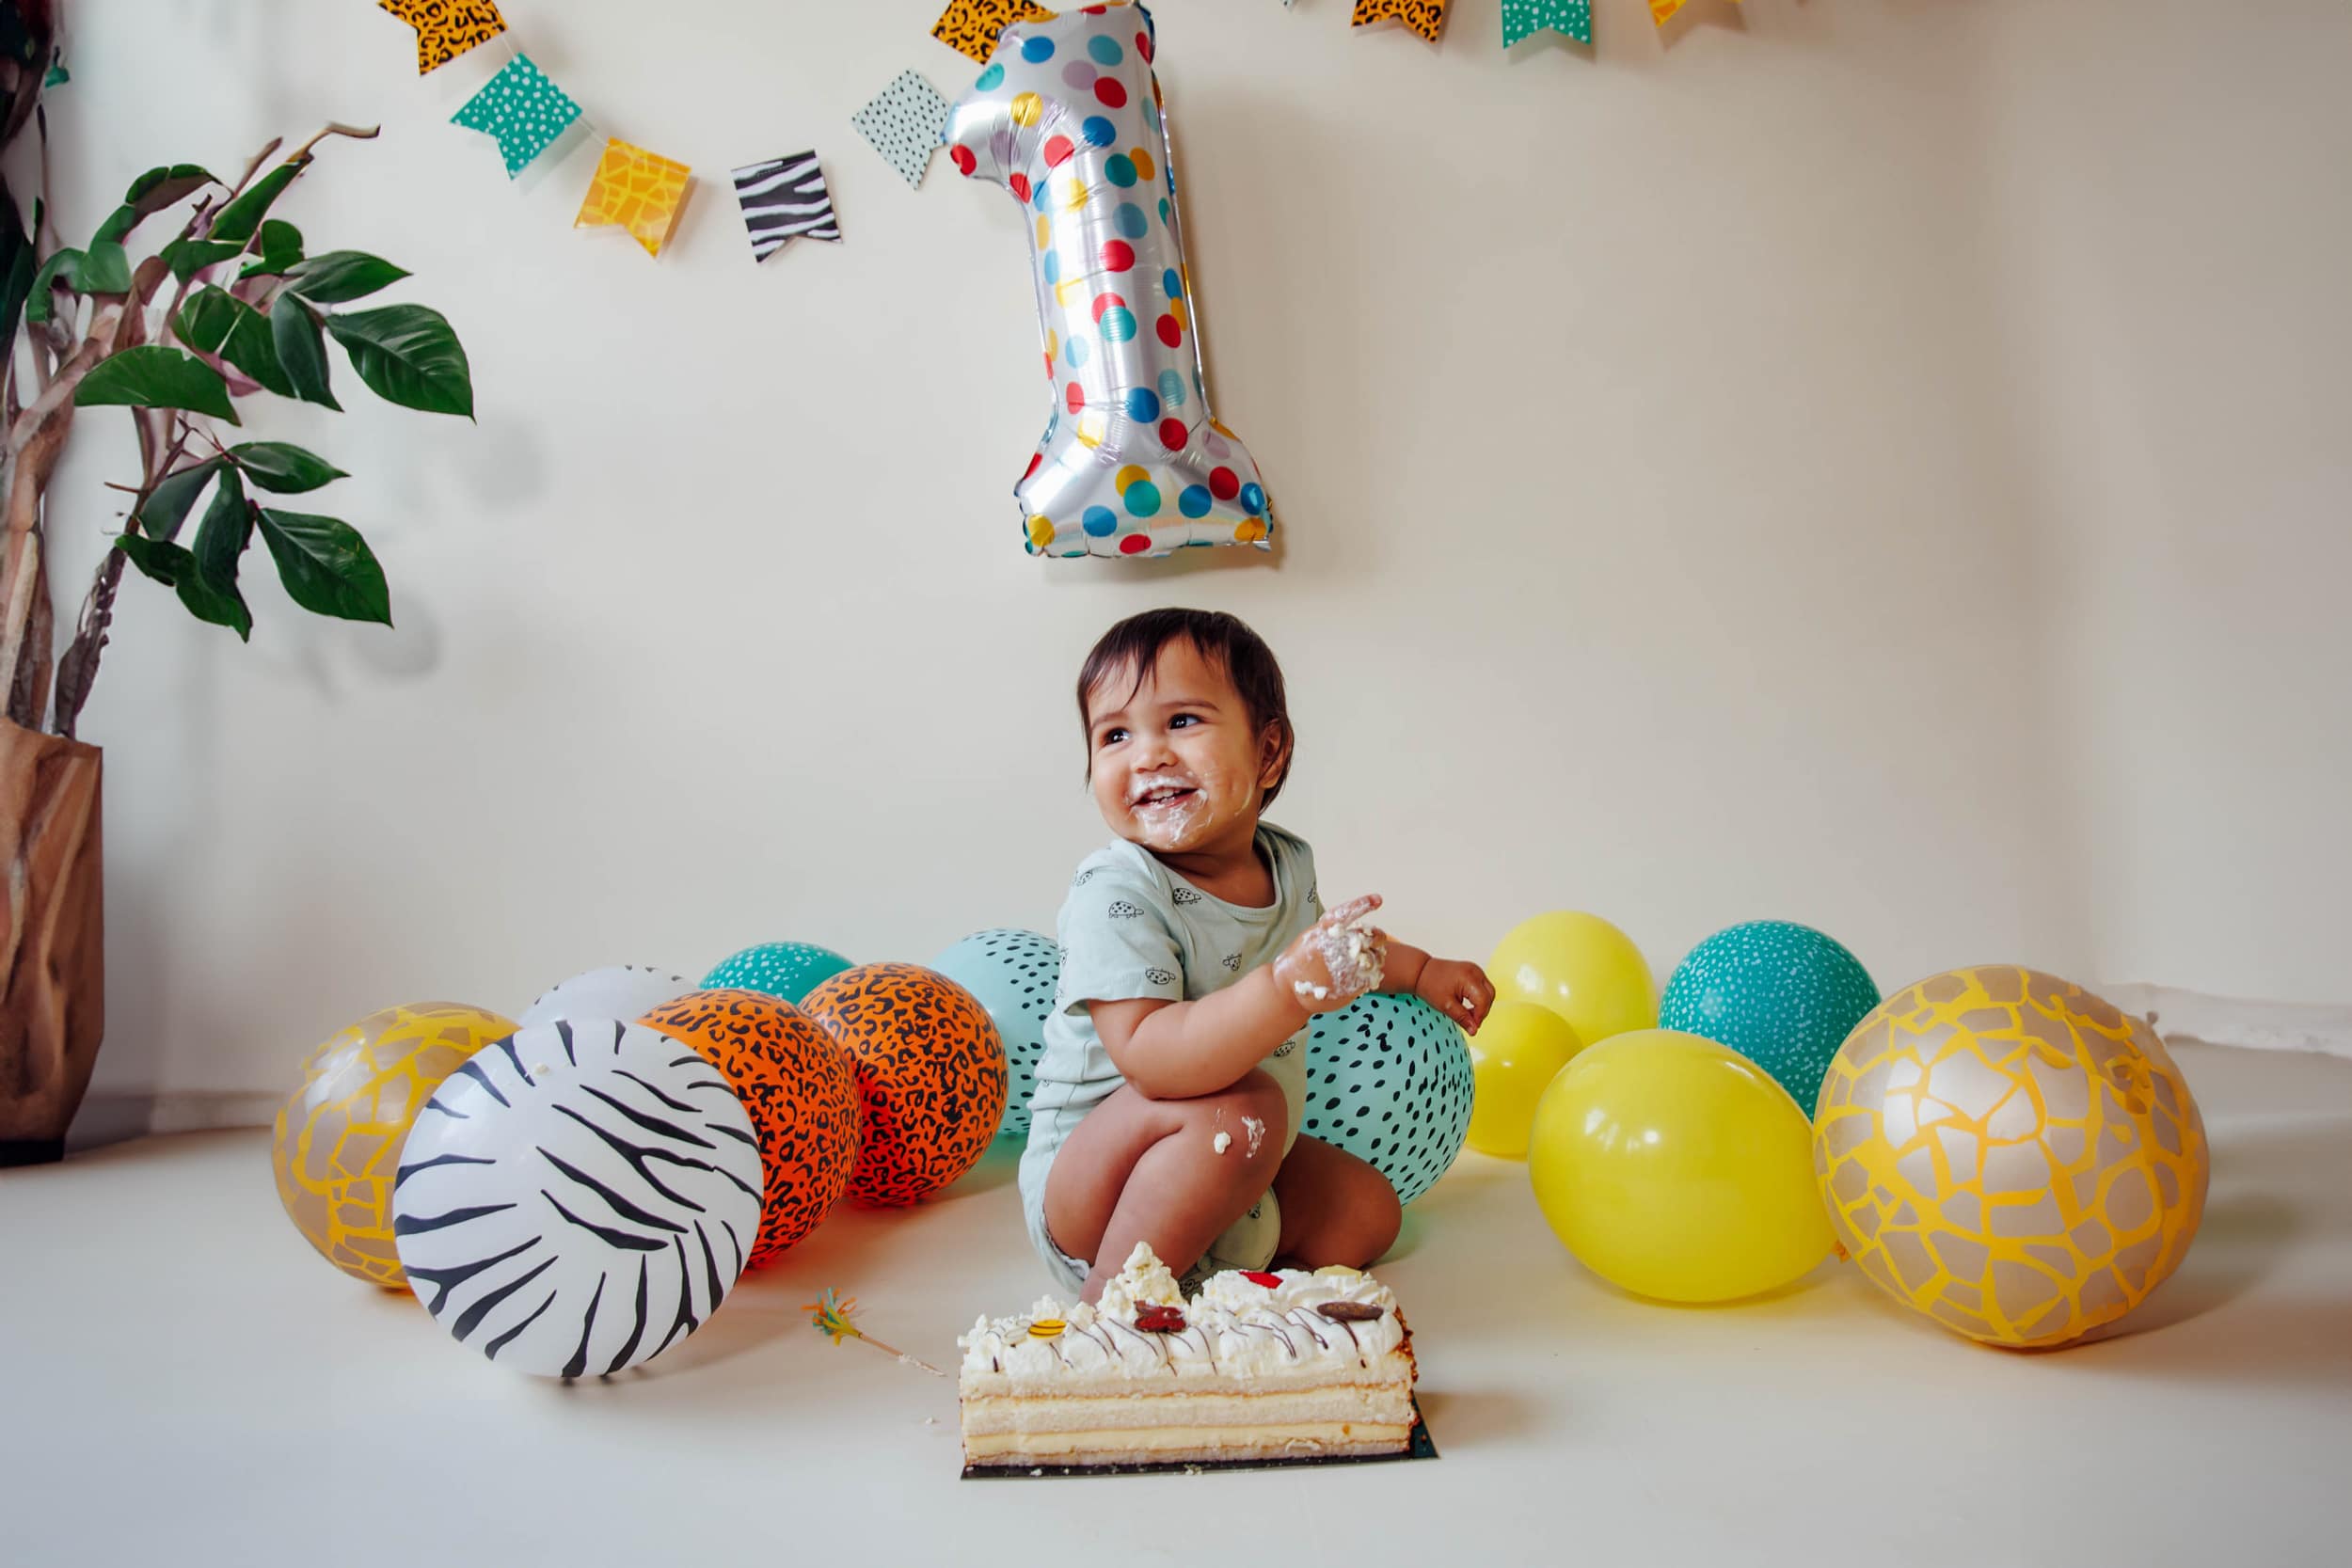 Een peuter zit op de grond met een taart, omringd door kleurrijke ballonnen en een grote '1'-ballon, wat duidt op een eerste verjaardag. Het kind heeft taart op zijn gezicht en handen.